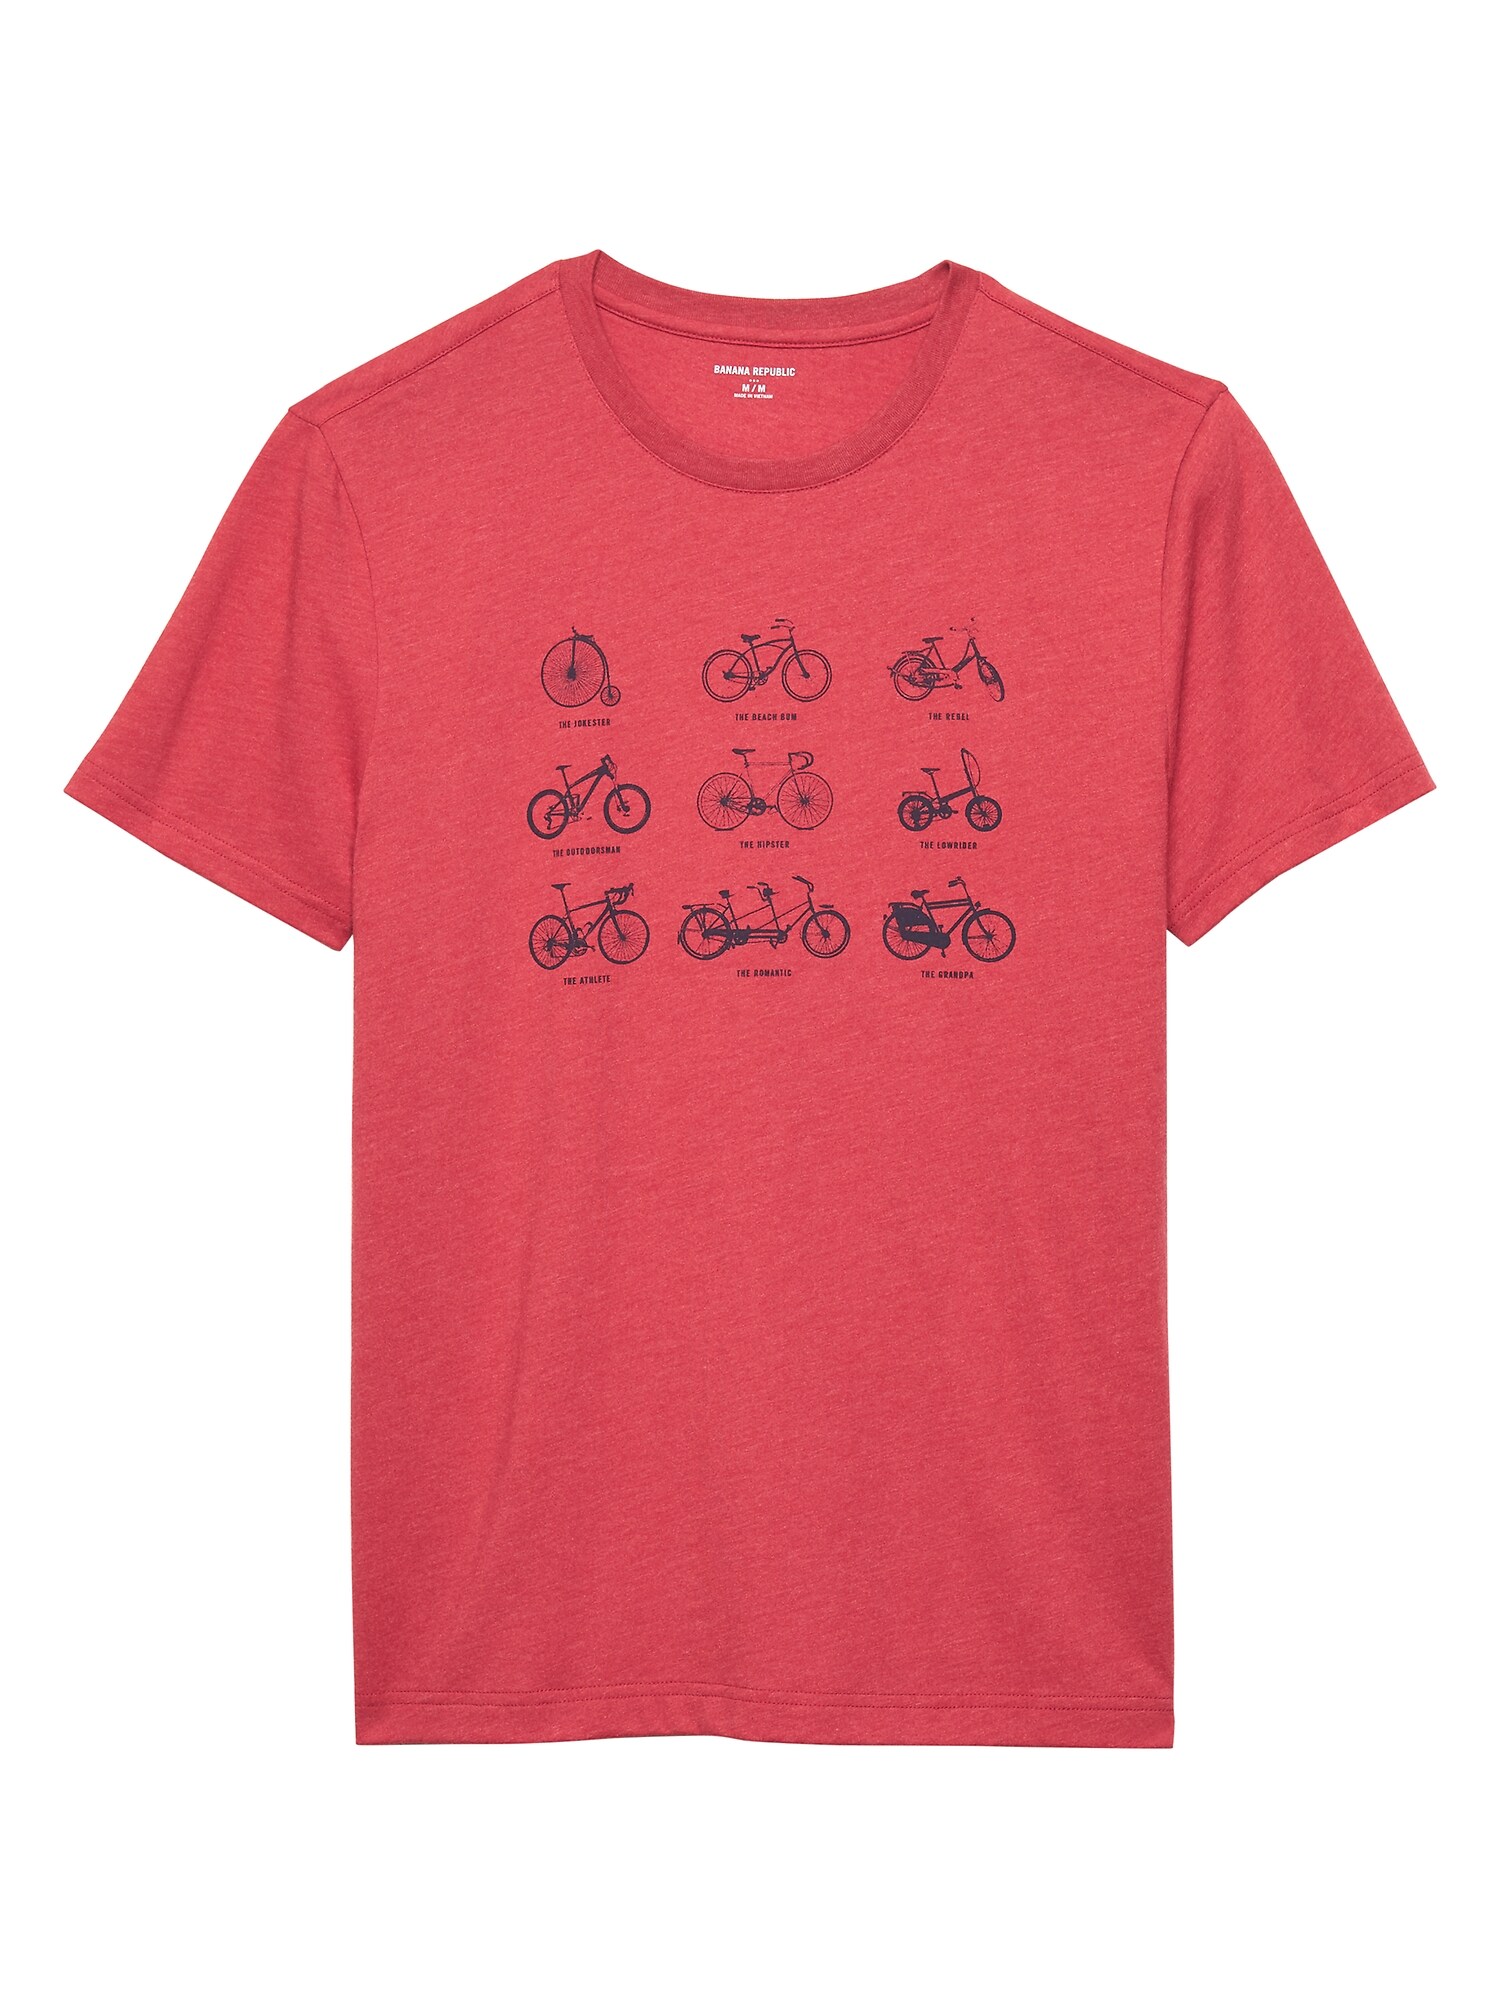 Bike Types Graphic T Shirt